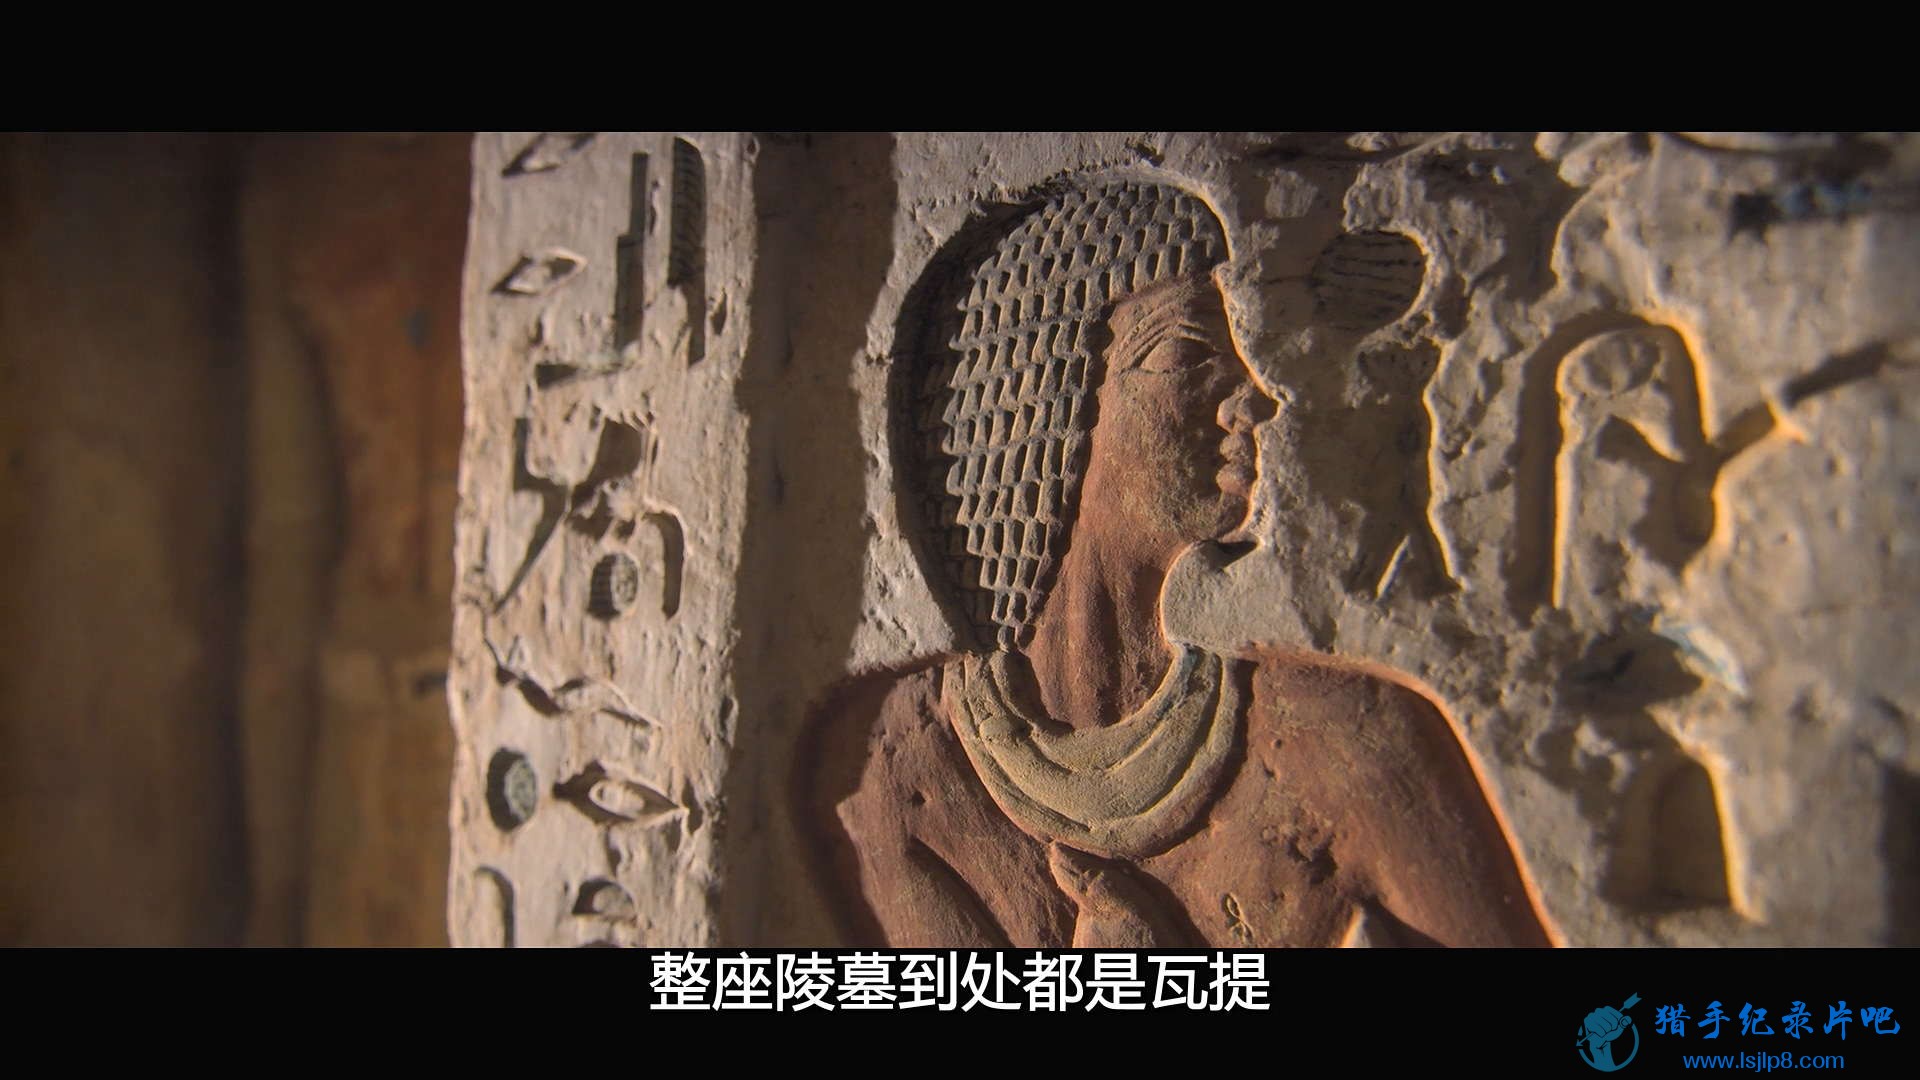 Secrets.of.the.Saqqara.Tomb.2020.1080p.NF.WEB-DL.DDP5.1.x264-MZABI.mkv_20201029_.jpg